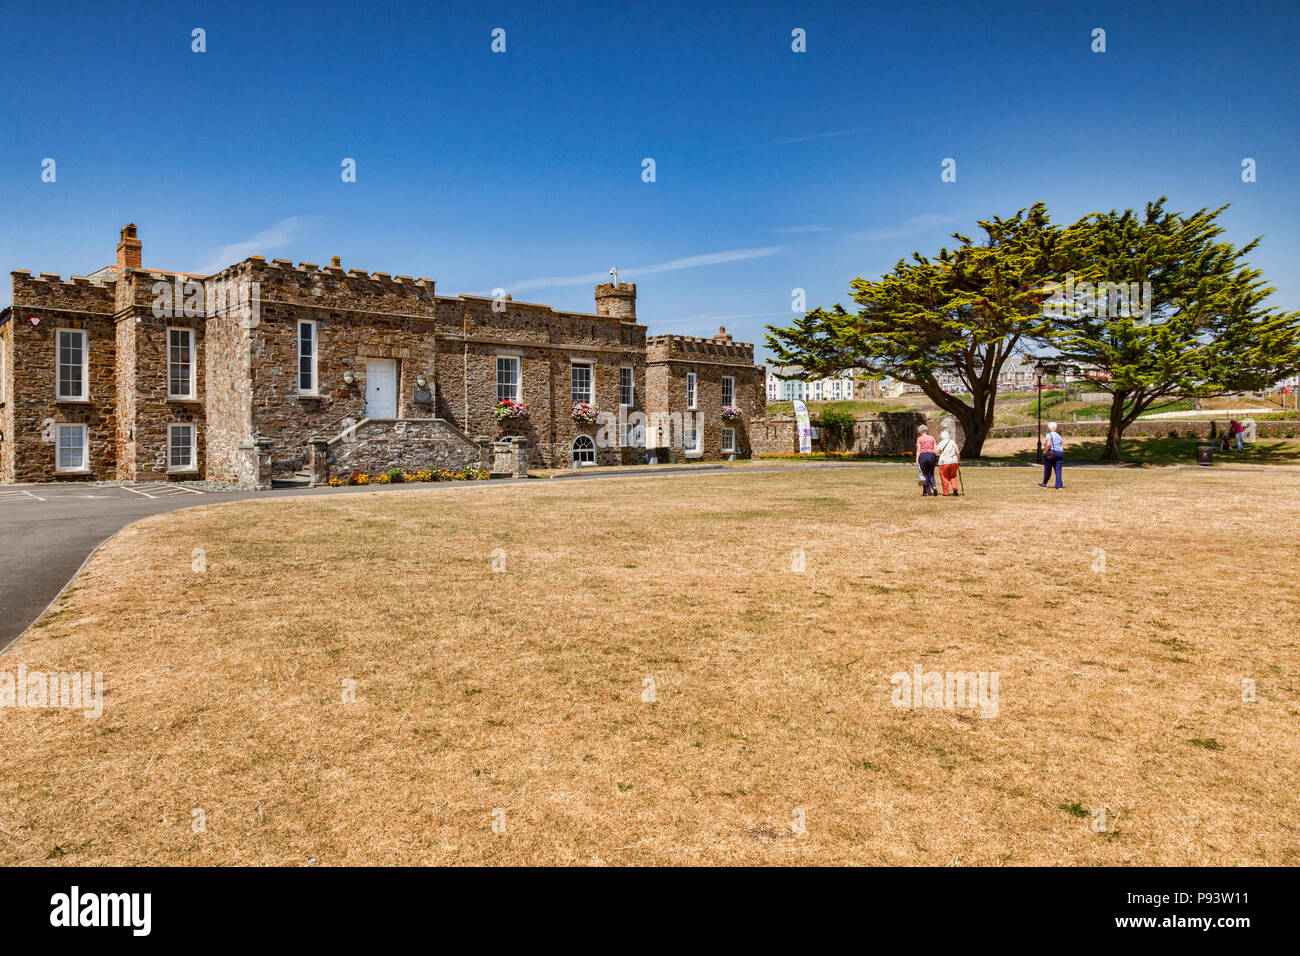 6 Luglio 2018: Bude, Cornwall, Regno Unito - Bude Castello, museo e centro del patrimonio. Di fronte è la siccità prato colpite, marrone completamente durante il mese di luglio h Foto Stock